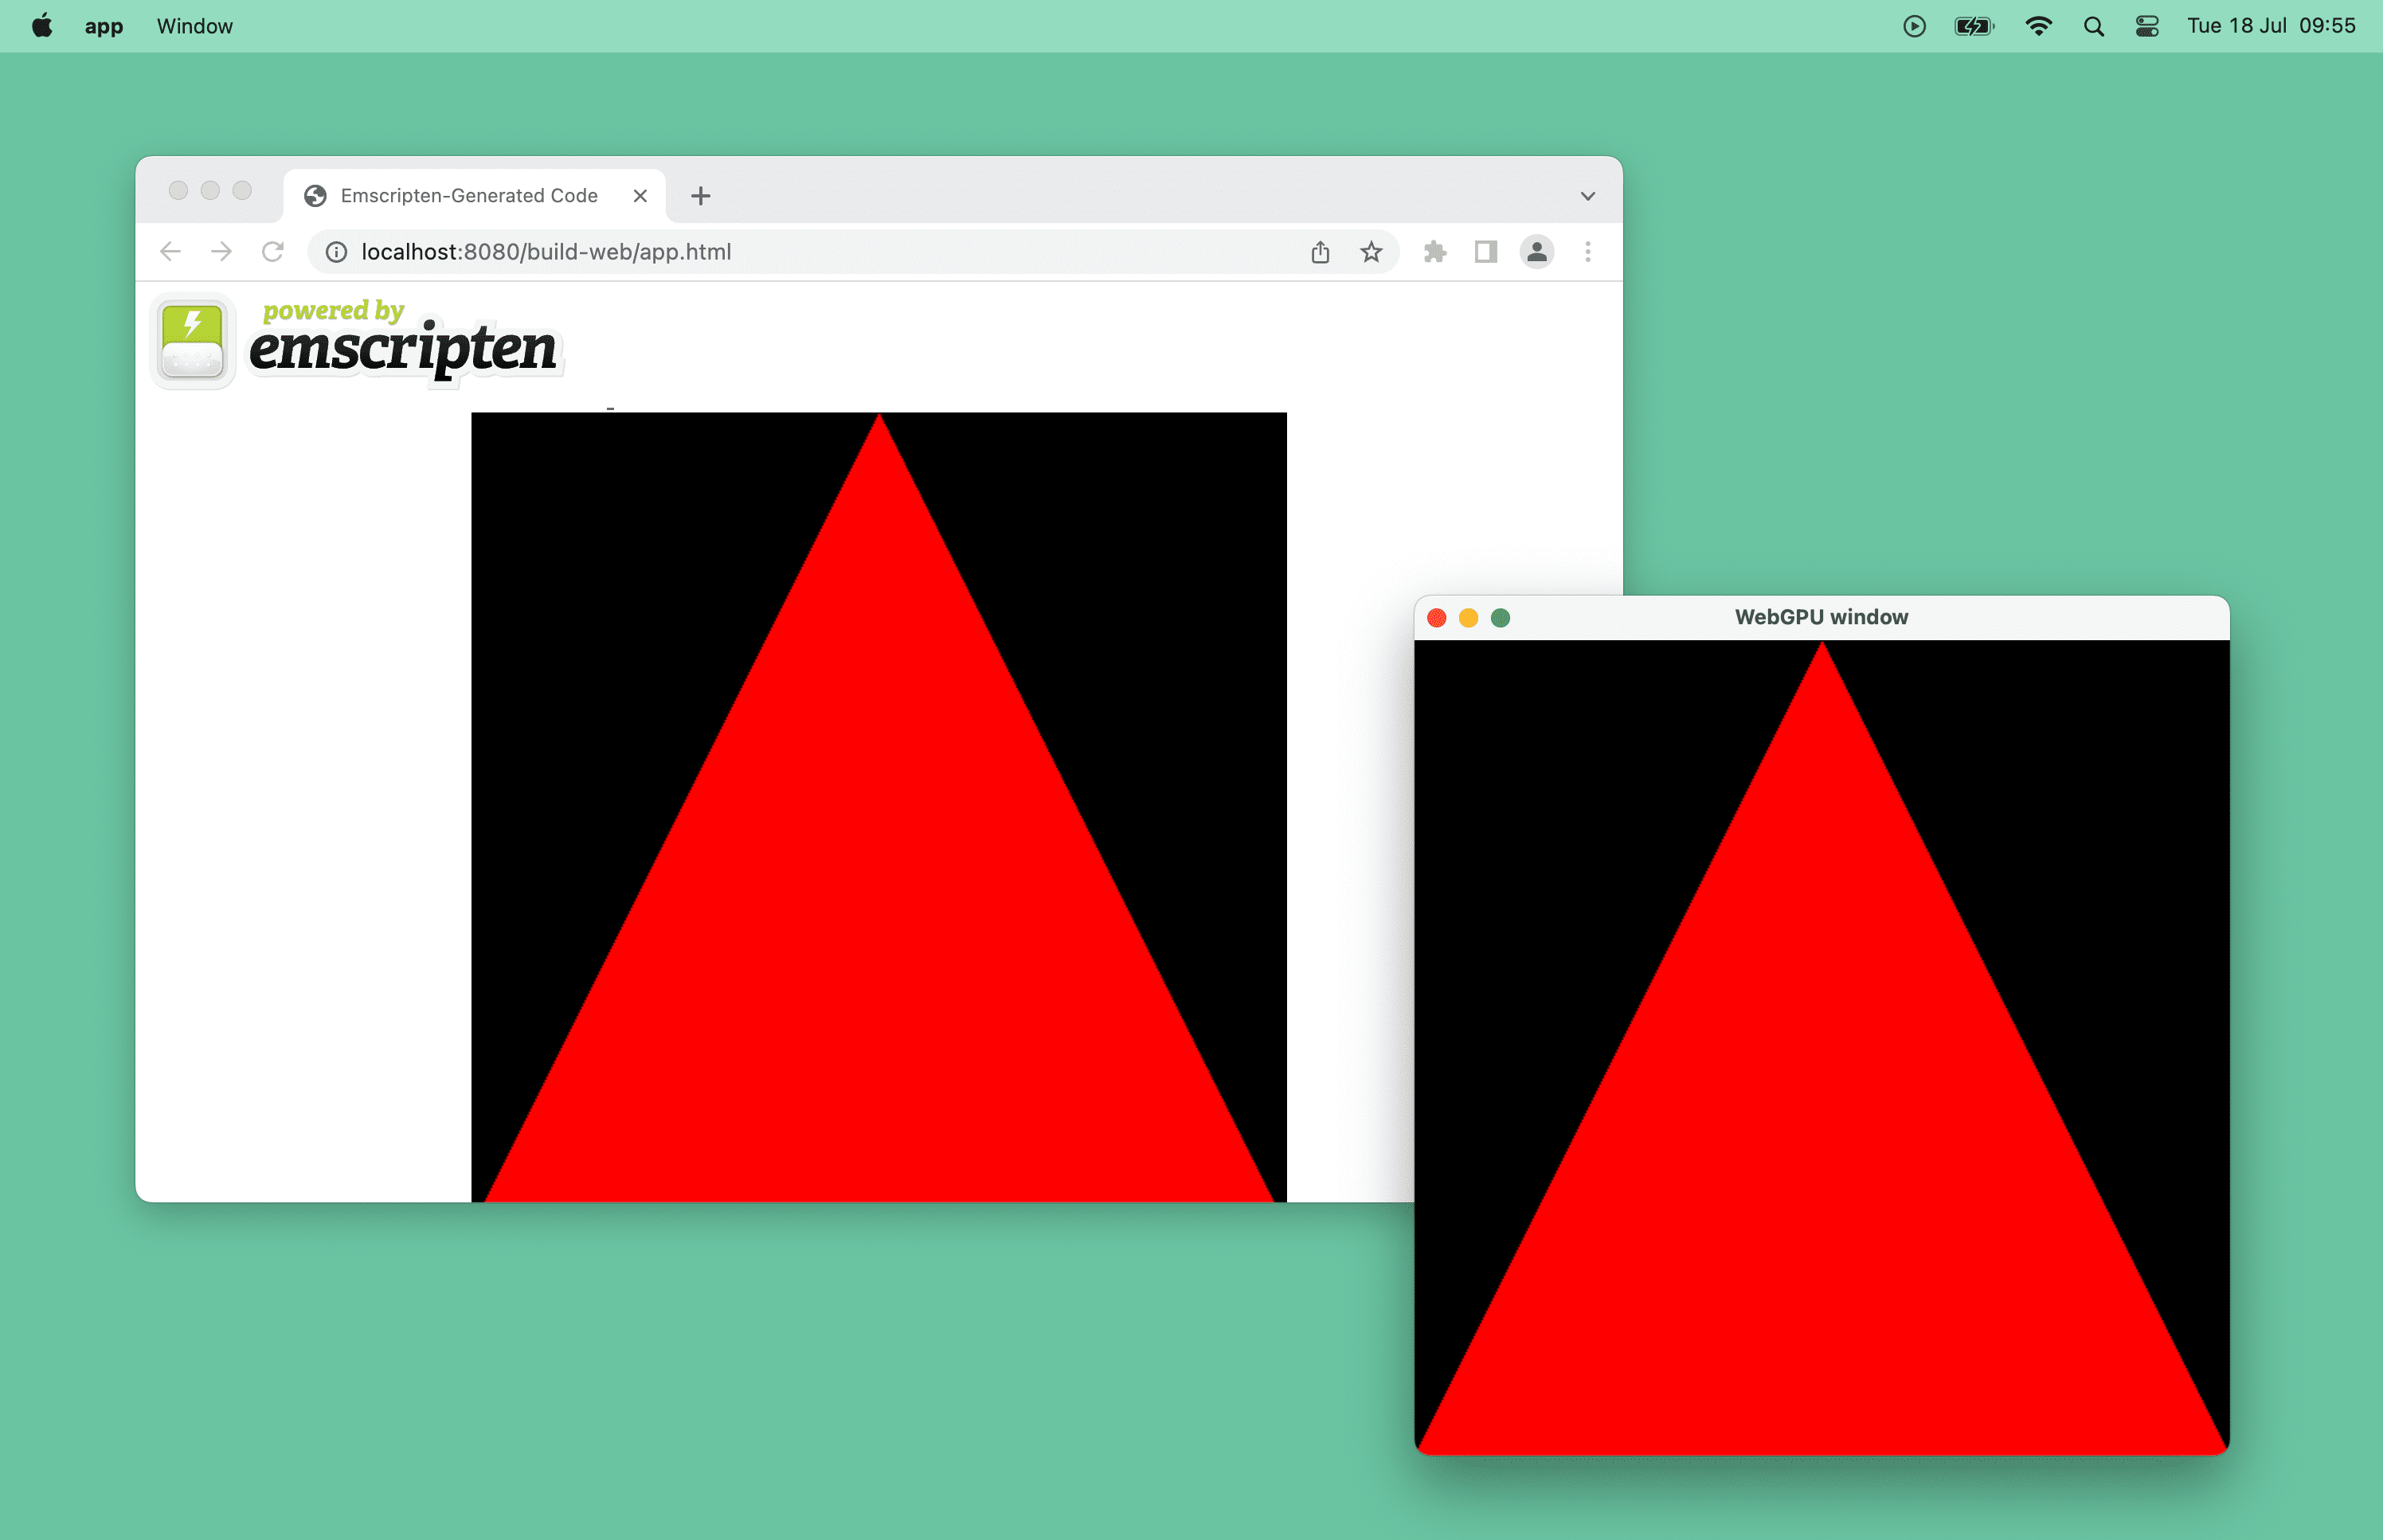 Ảnh chụp màn hình hình tam giác màu đỏ do WebGPU hỗ trợ trong một cửa sổ trình duyệt và một cửa sổ máy tính trên macOS.